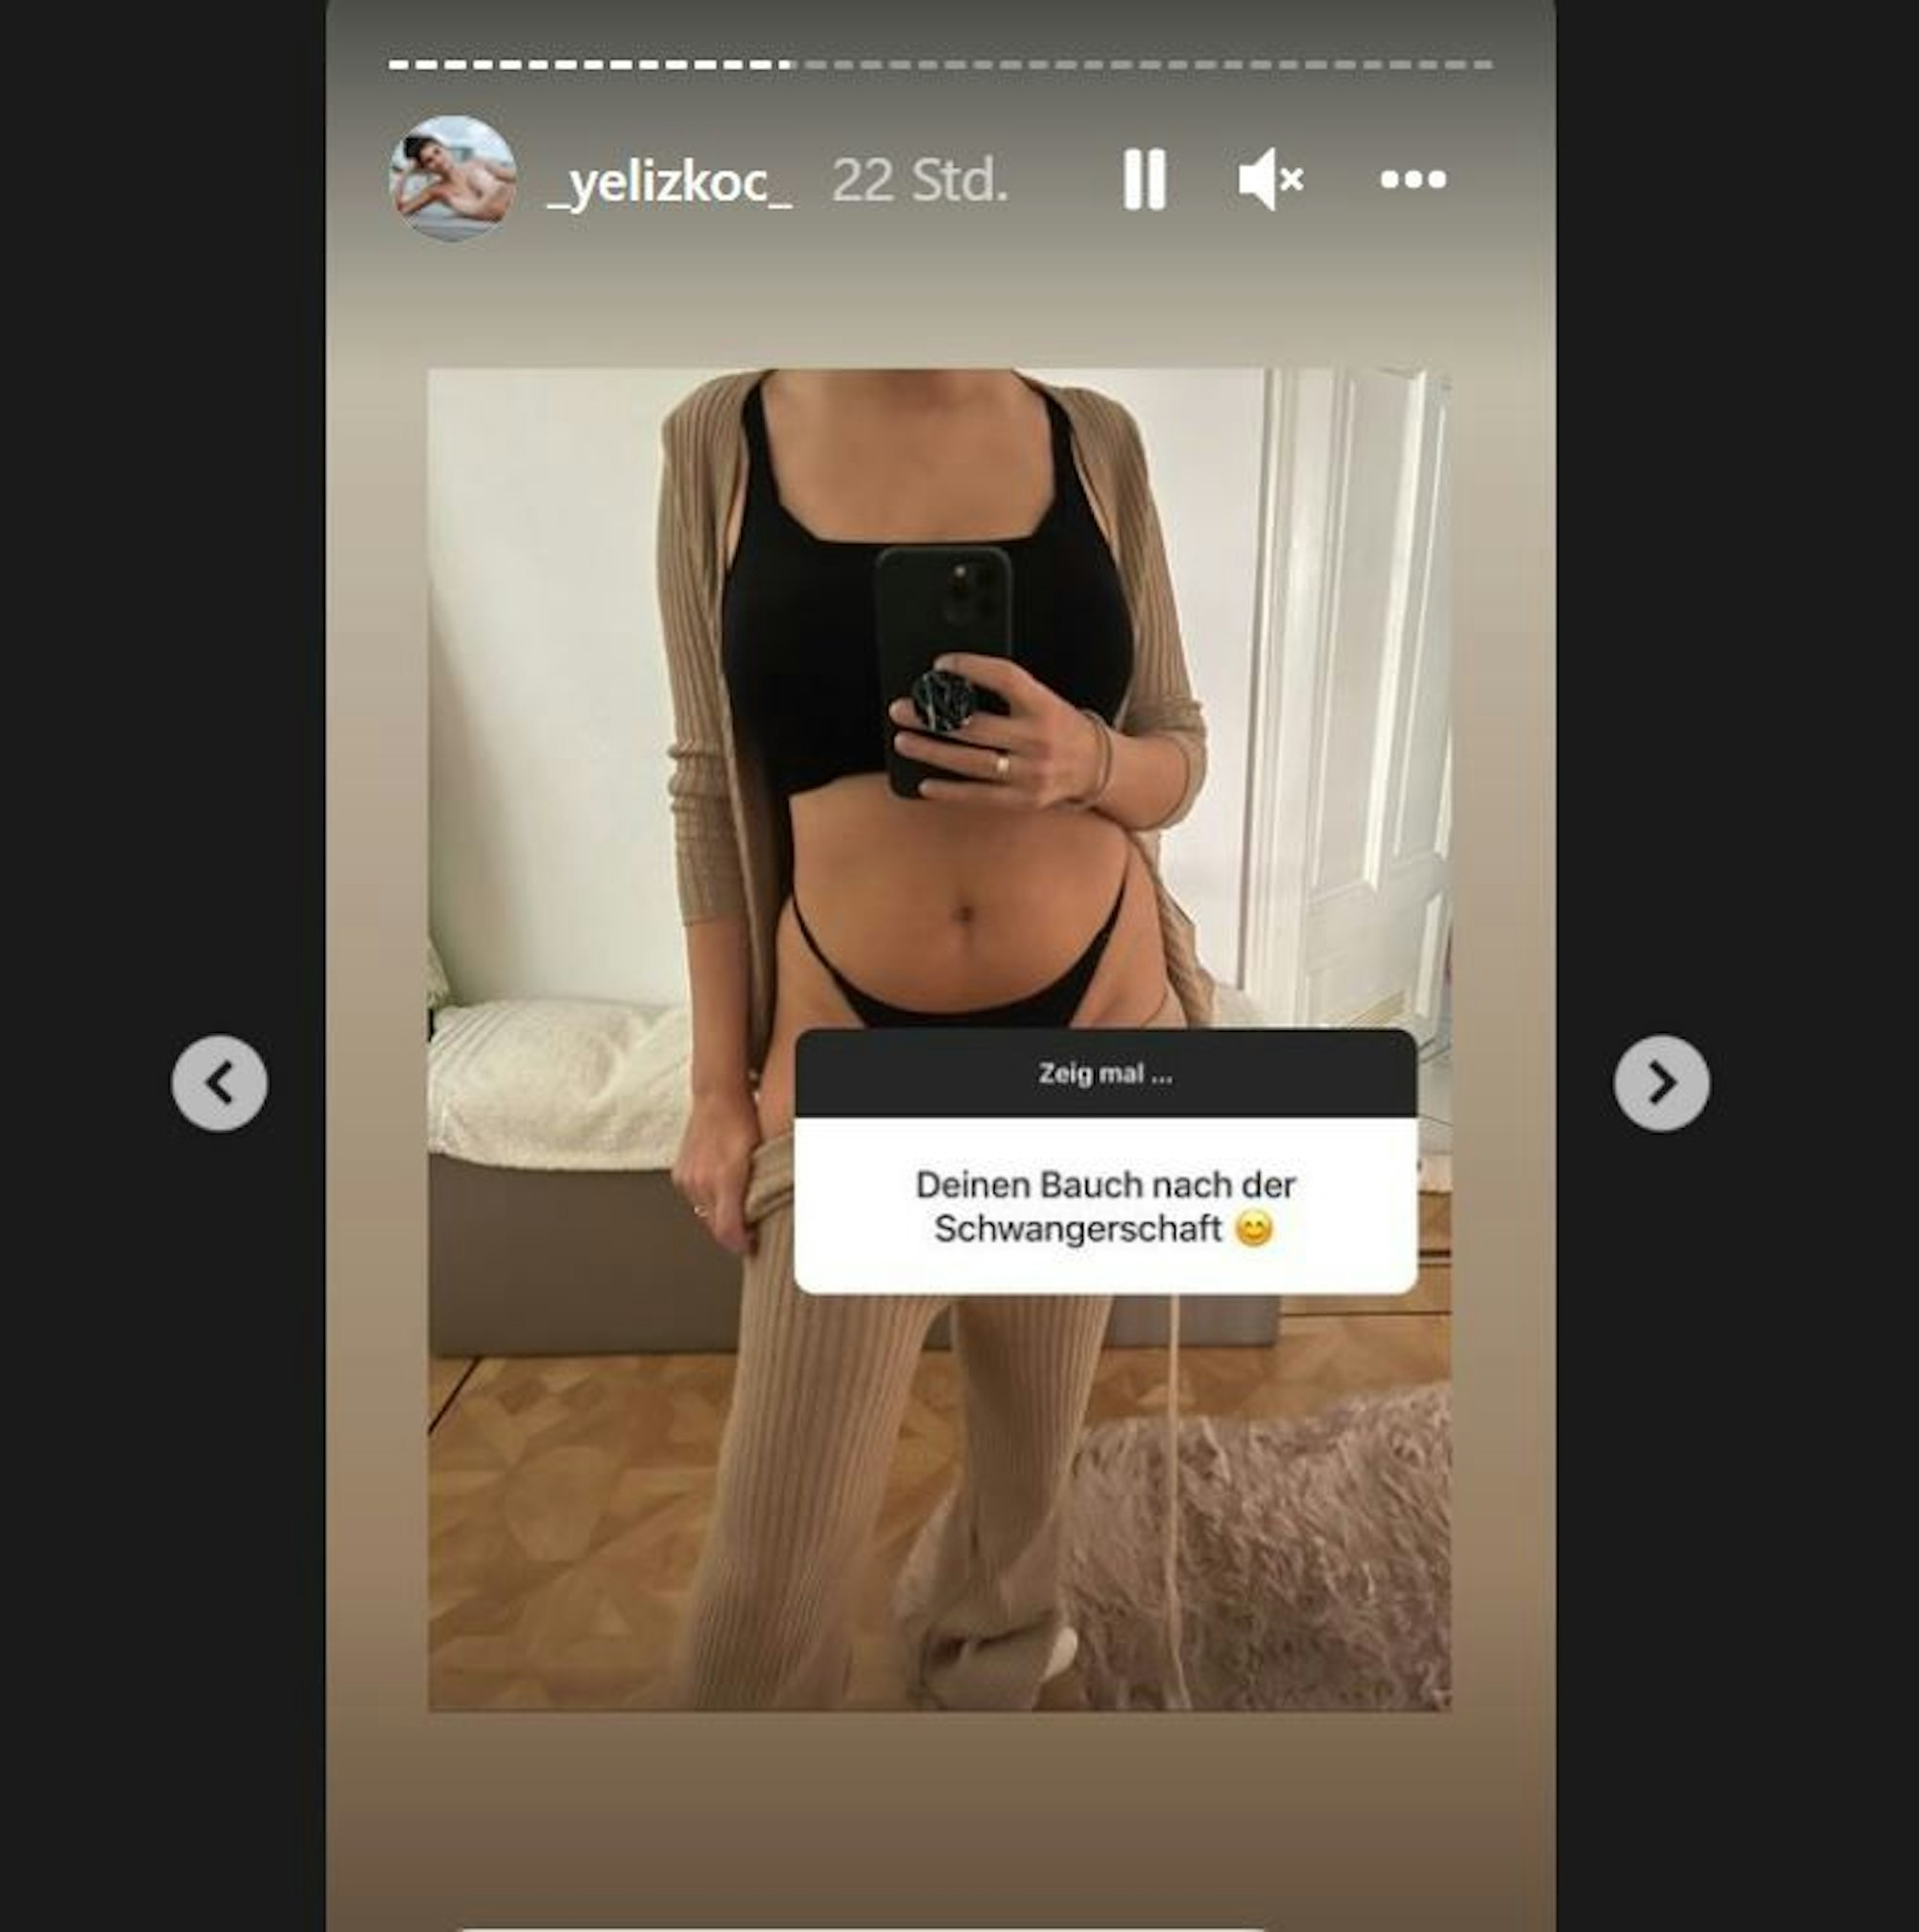 Yeliz Koc zeigt ein Foto von ihrem Bauch nach der Schwangerschaft.